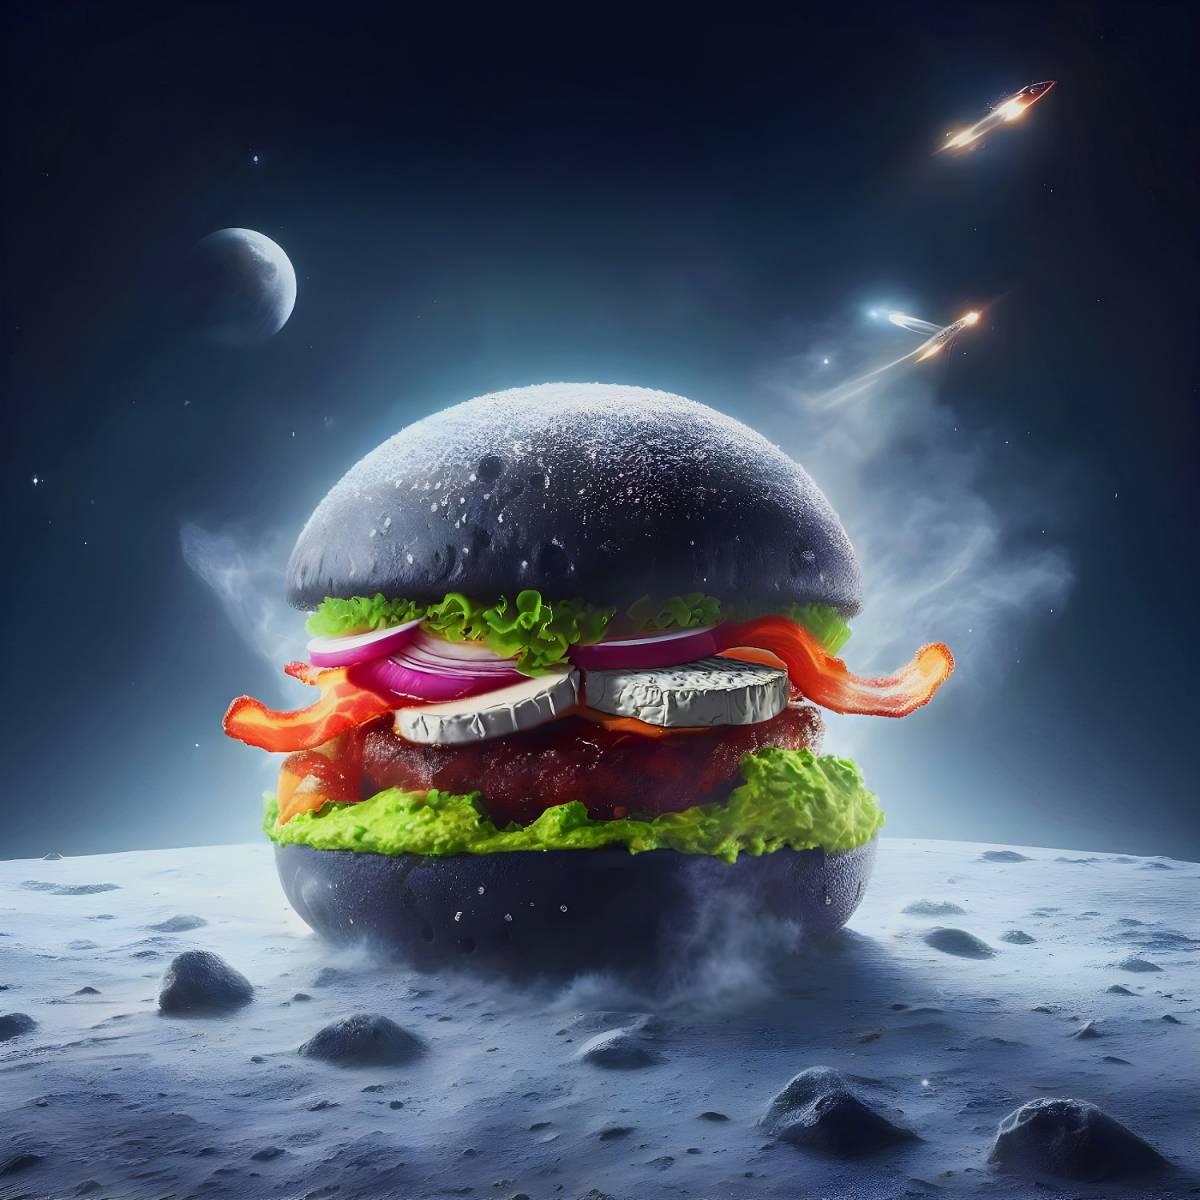 L'ultimo piatto gastrofighetto: ci mancava solo il burger "cucinato" dall'intelligenza artificiale